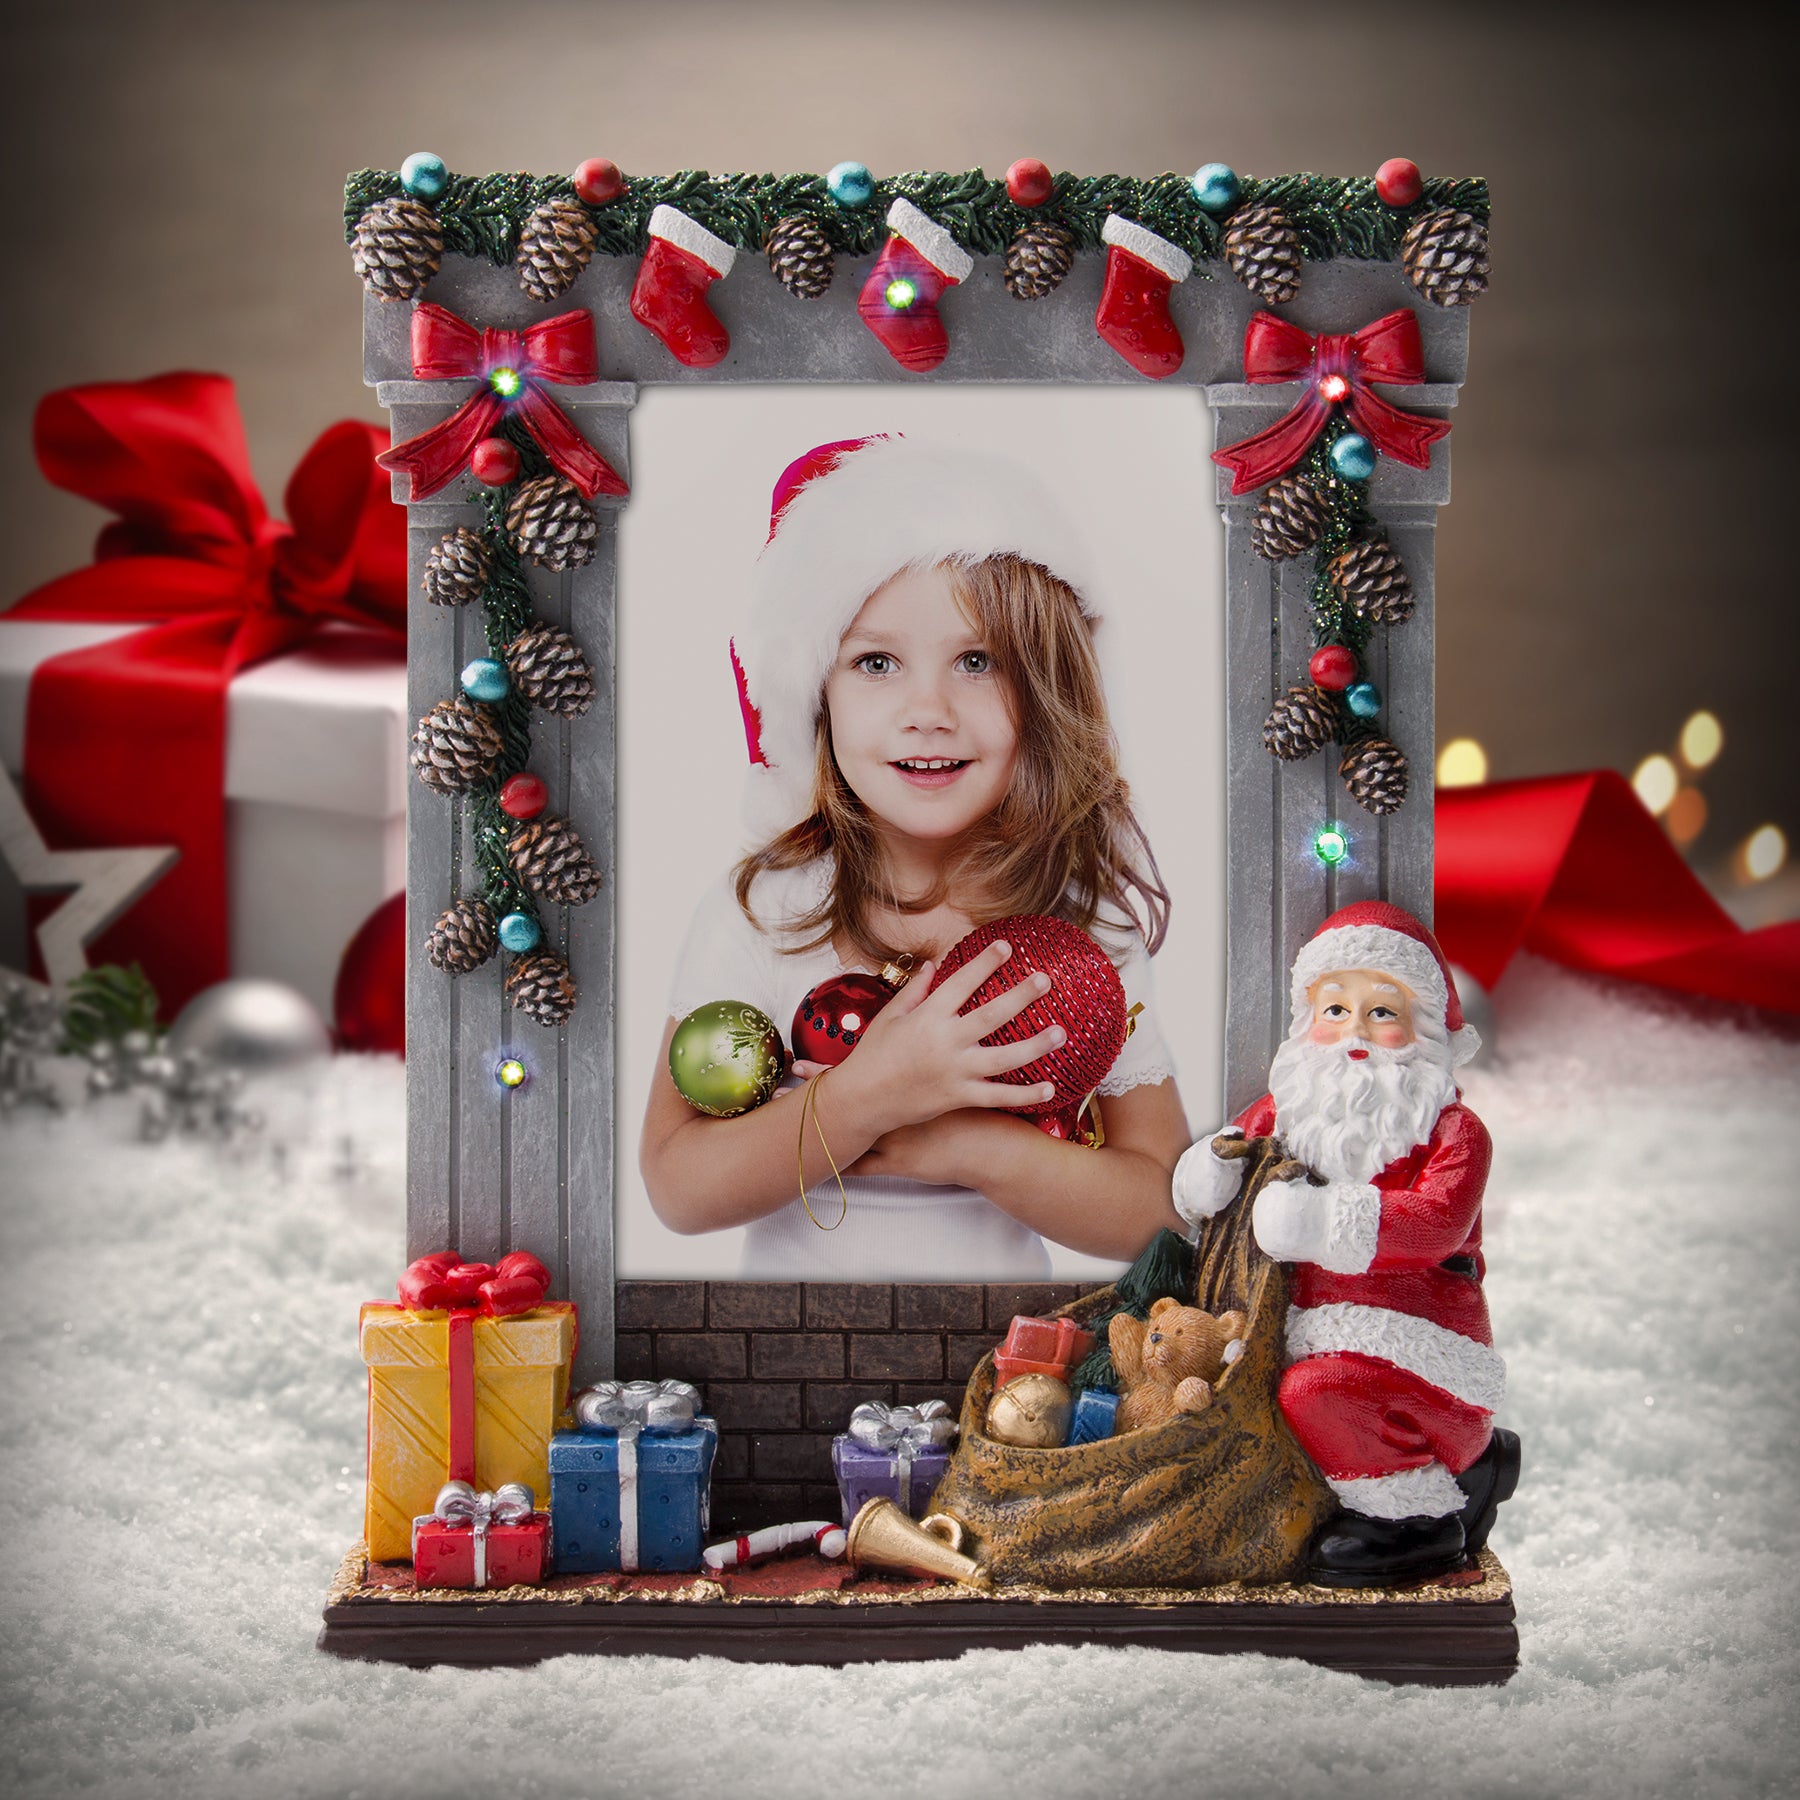 Marco de fotos de resina de Papá Noel navideño iluminado de 4" x 6"